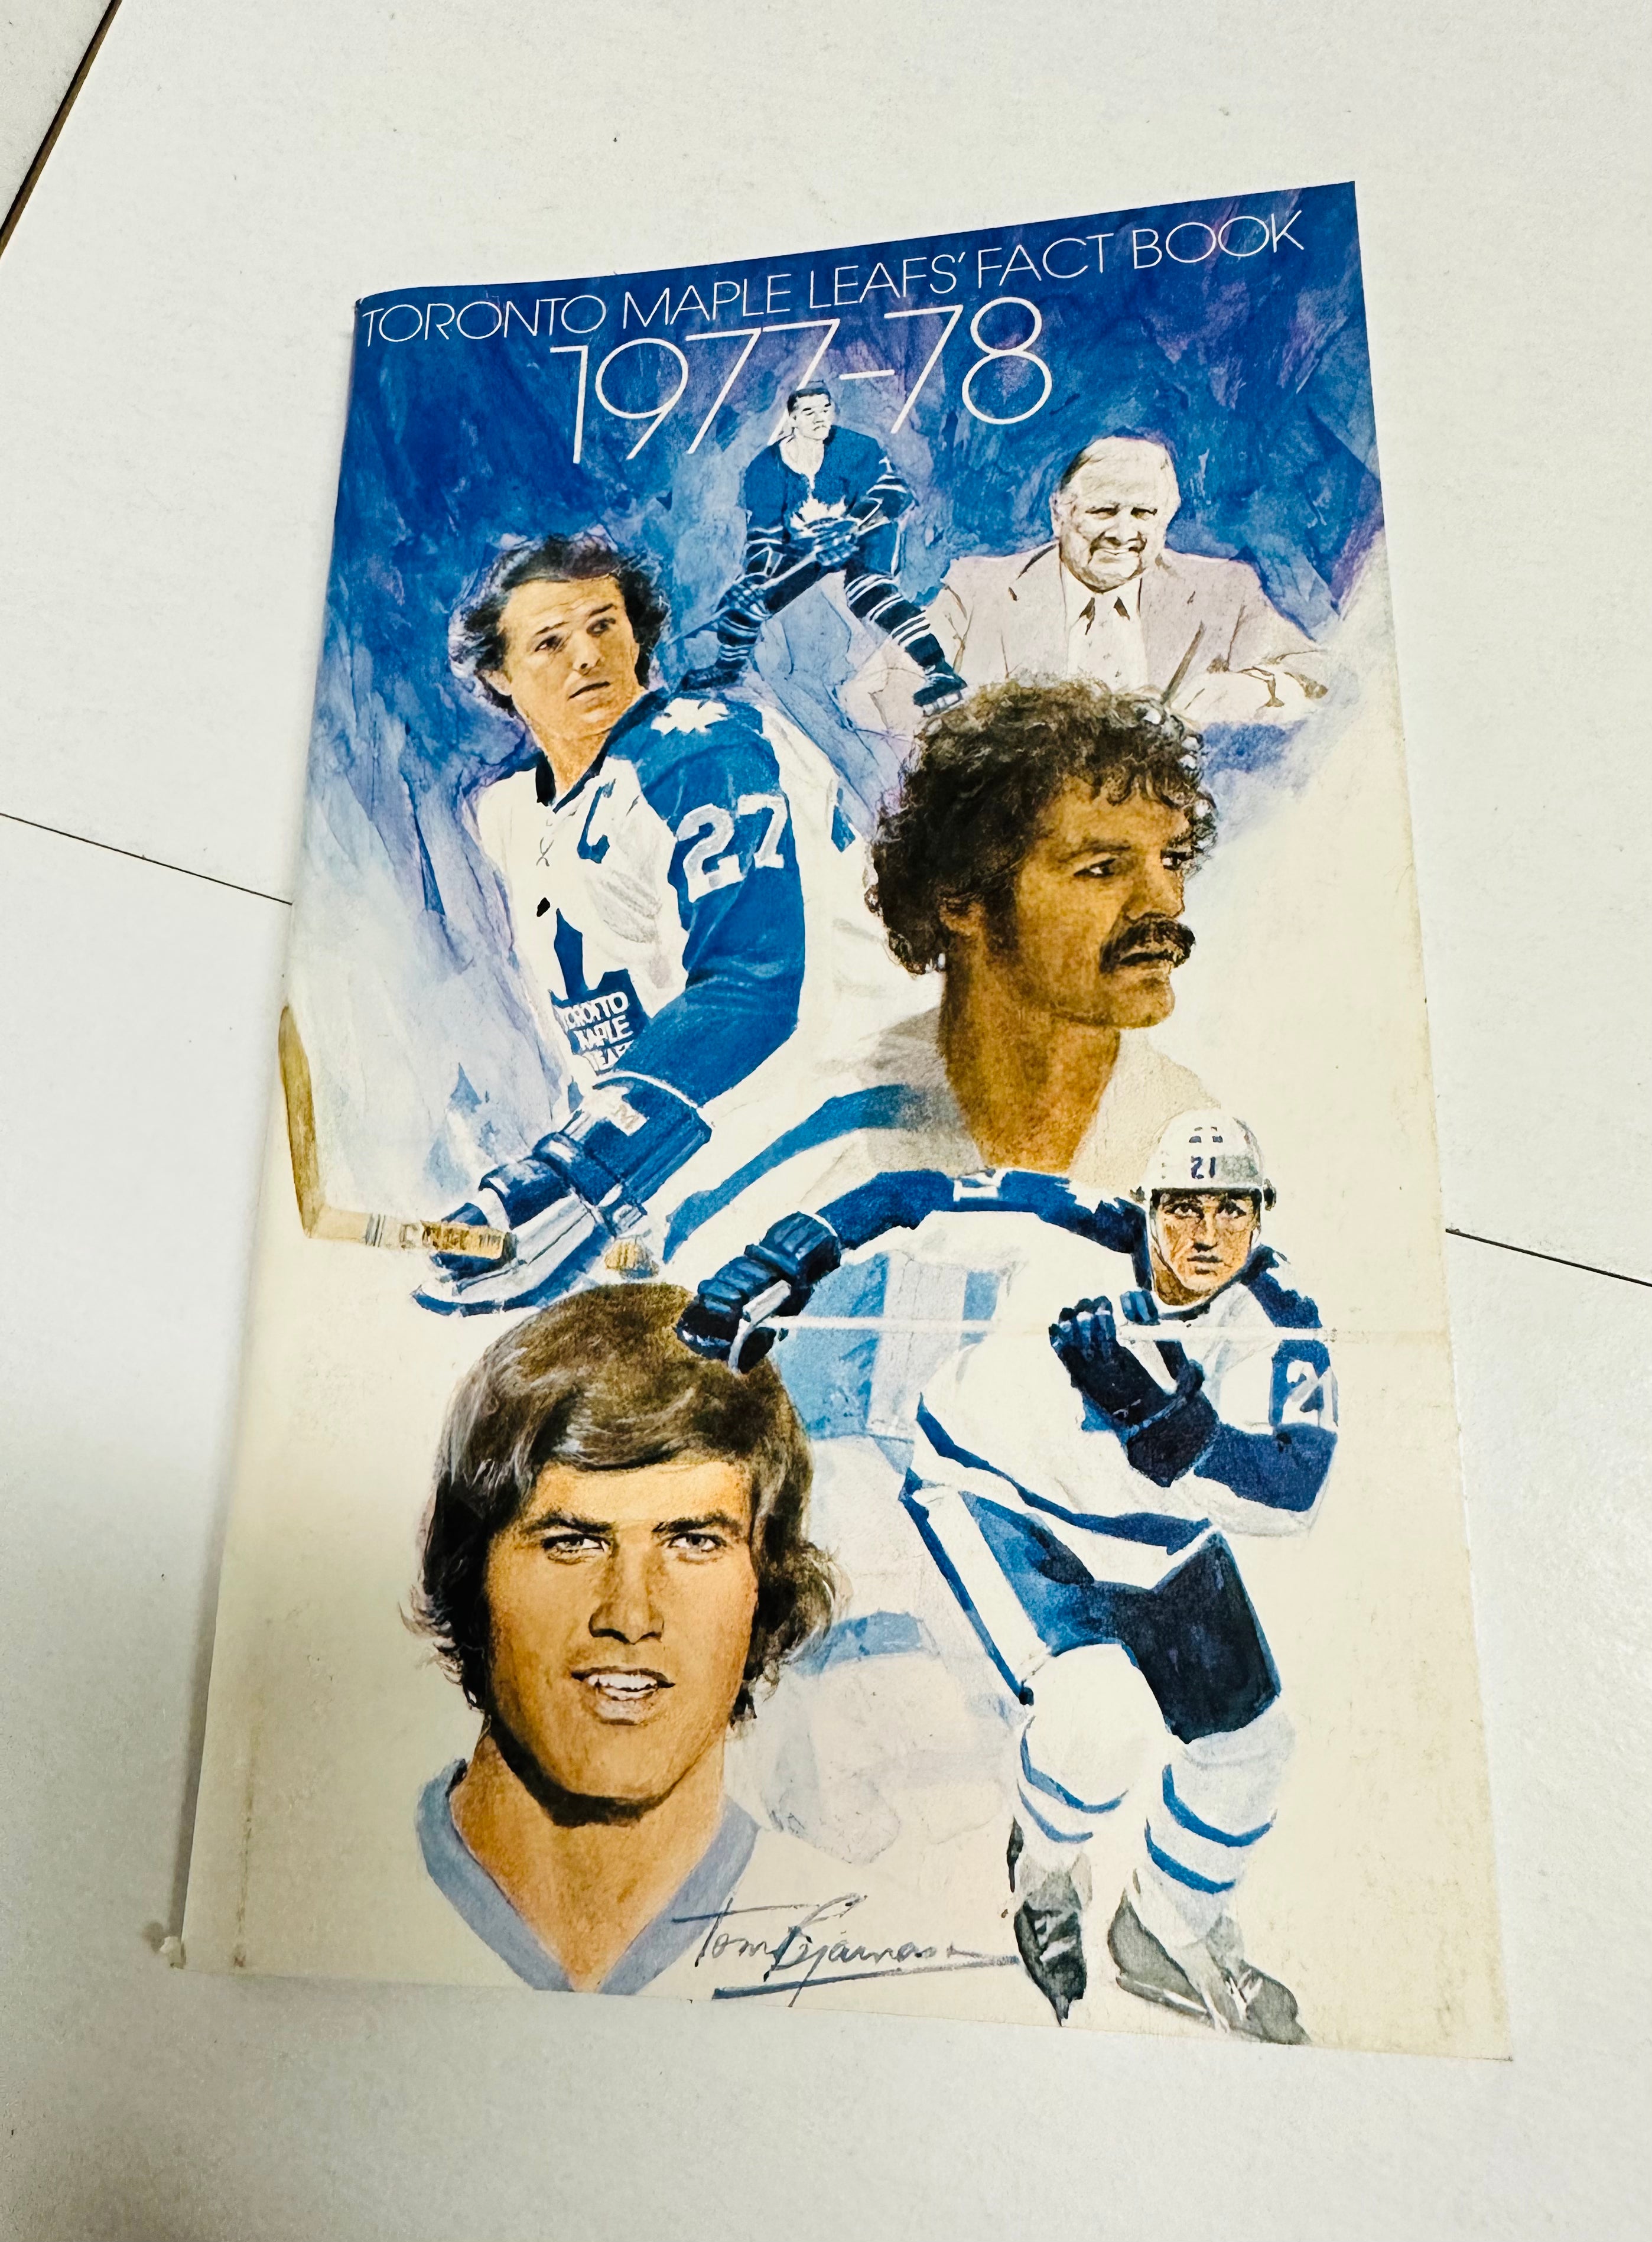 Leafs hockey media guide 1977-78